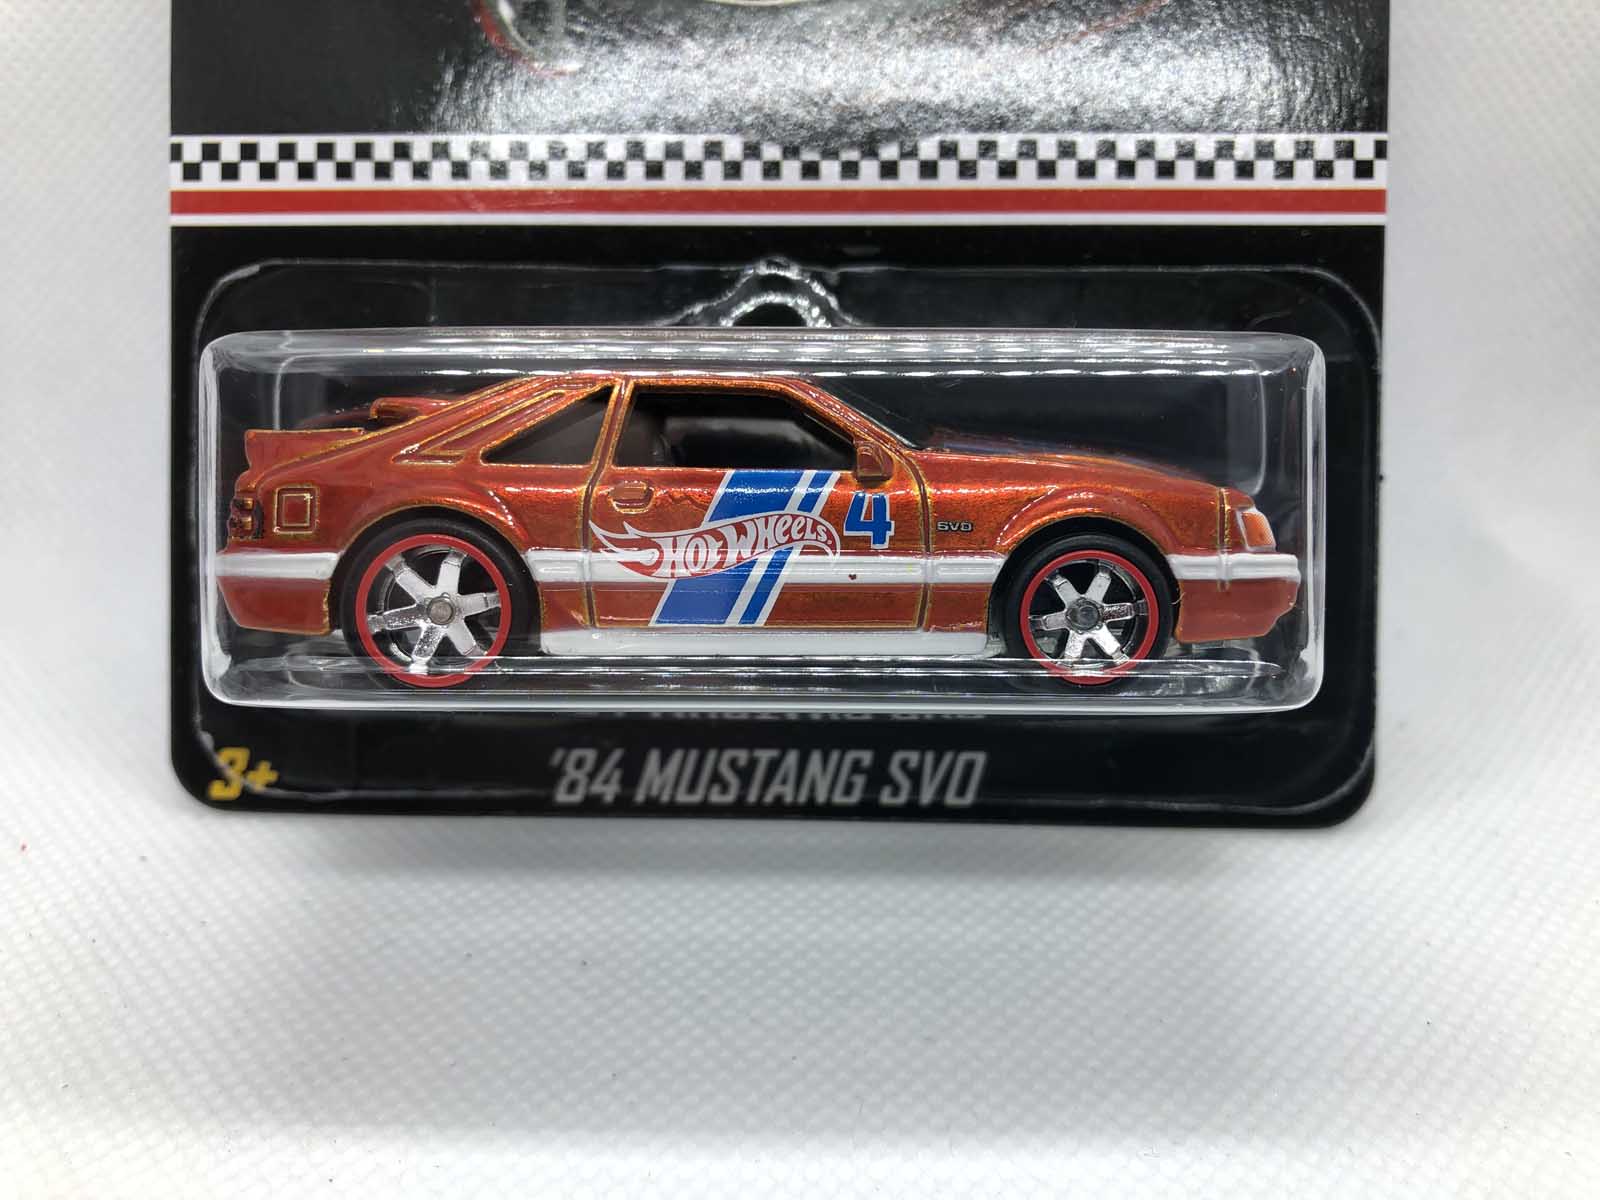 84 Mustang SVO